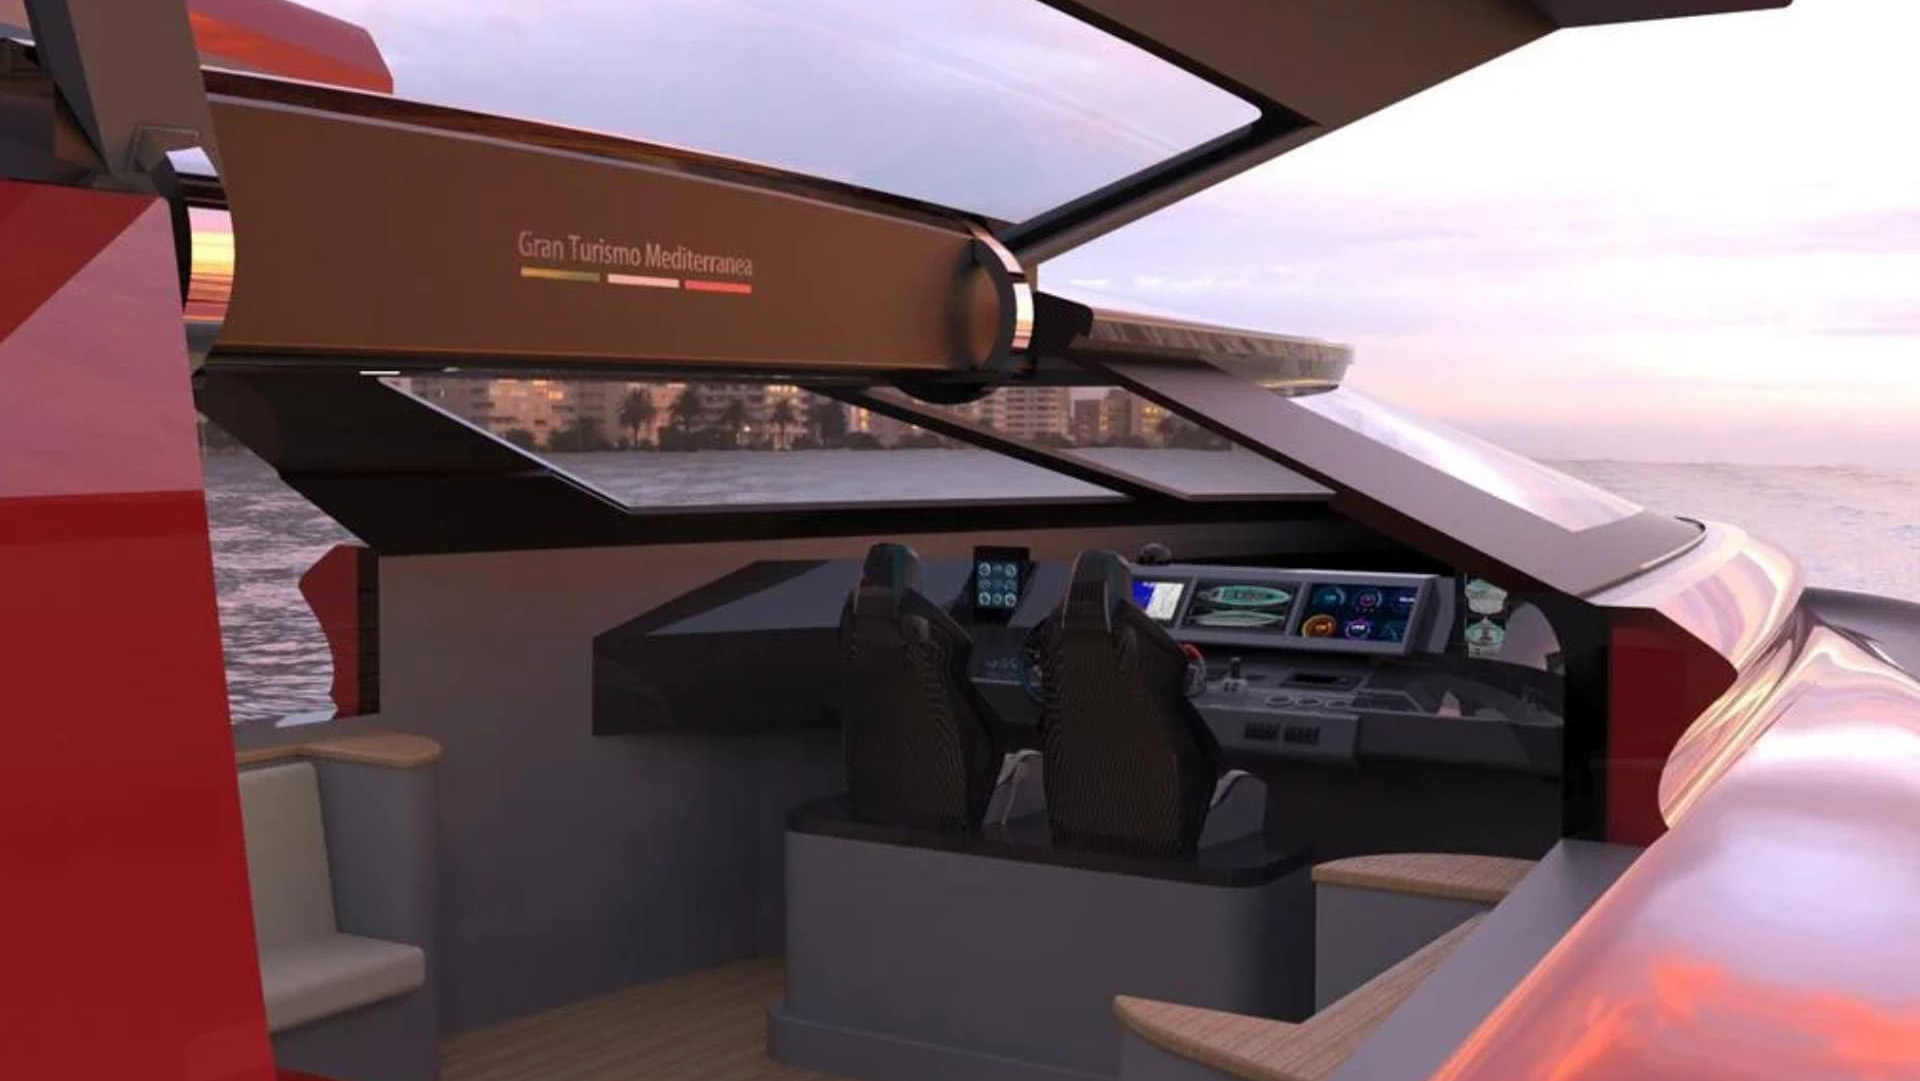 La cabina de conducción representa un cockpit de un auto de Gran Turismo, tanto por el diseño de los instrumentos y controles como por las dos butacas